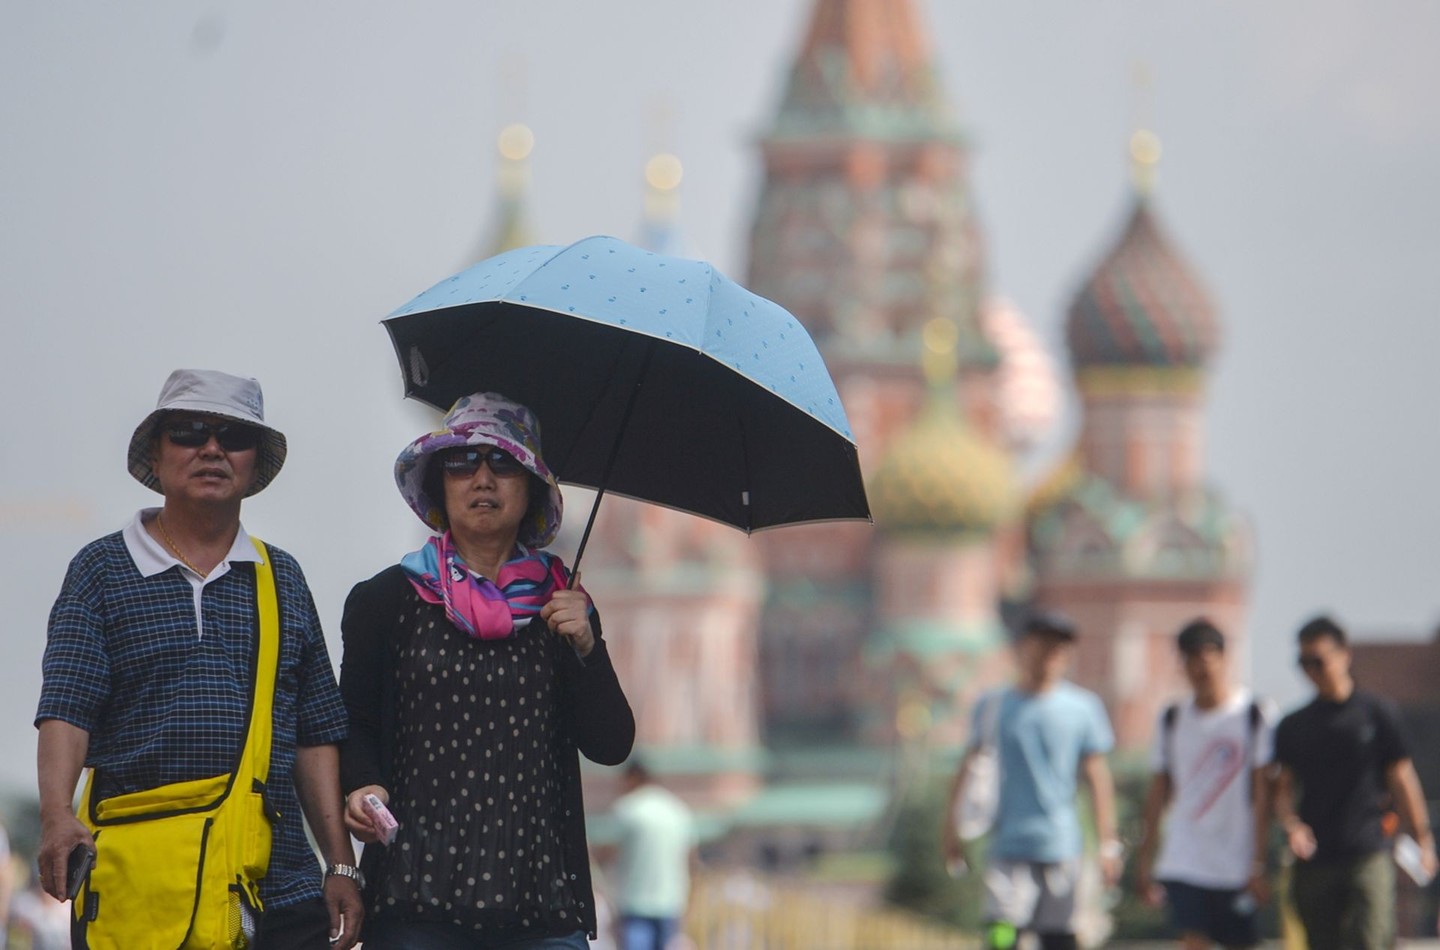  Директор Гидрометцентра: В Москве похолодает, ветер усилится и пройдут грозы - фото 1